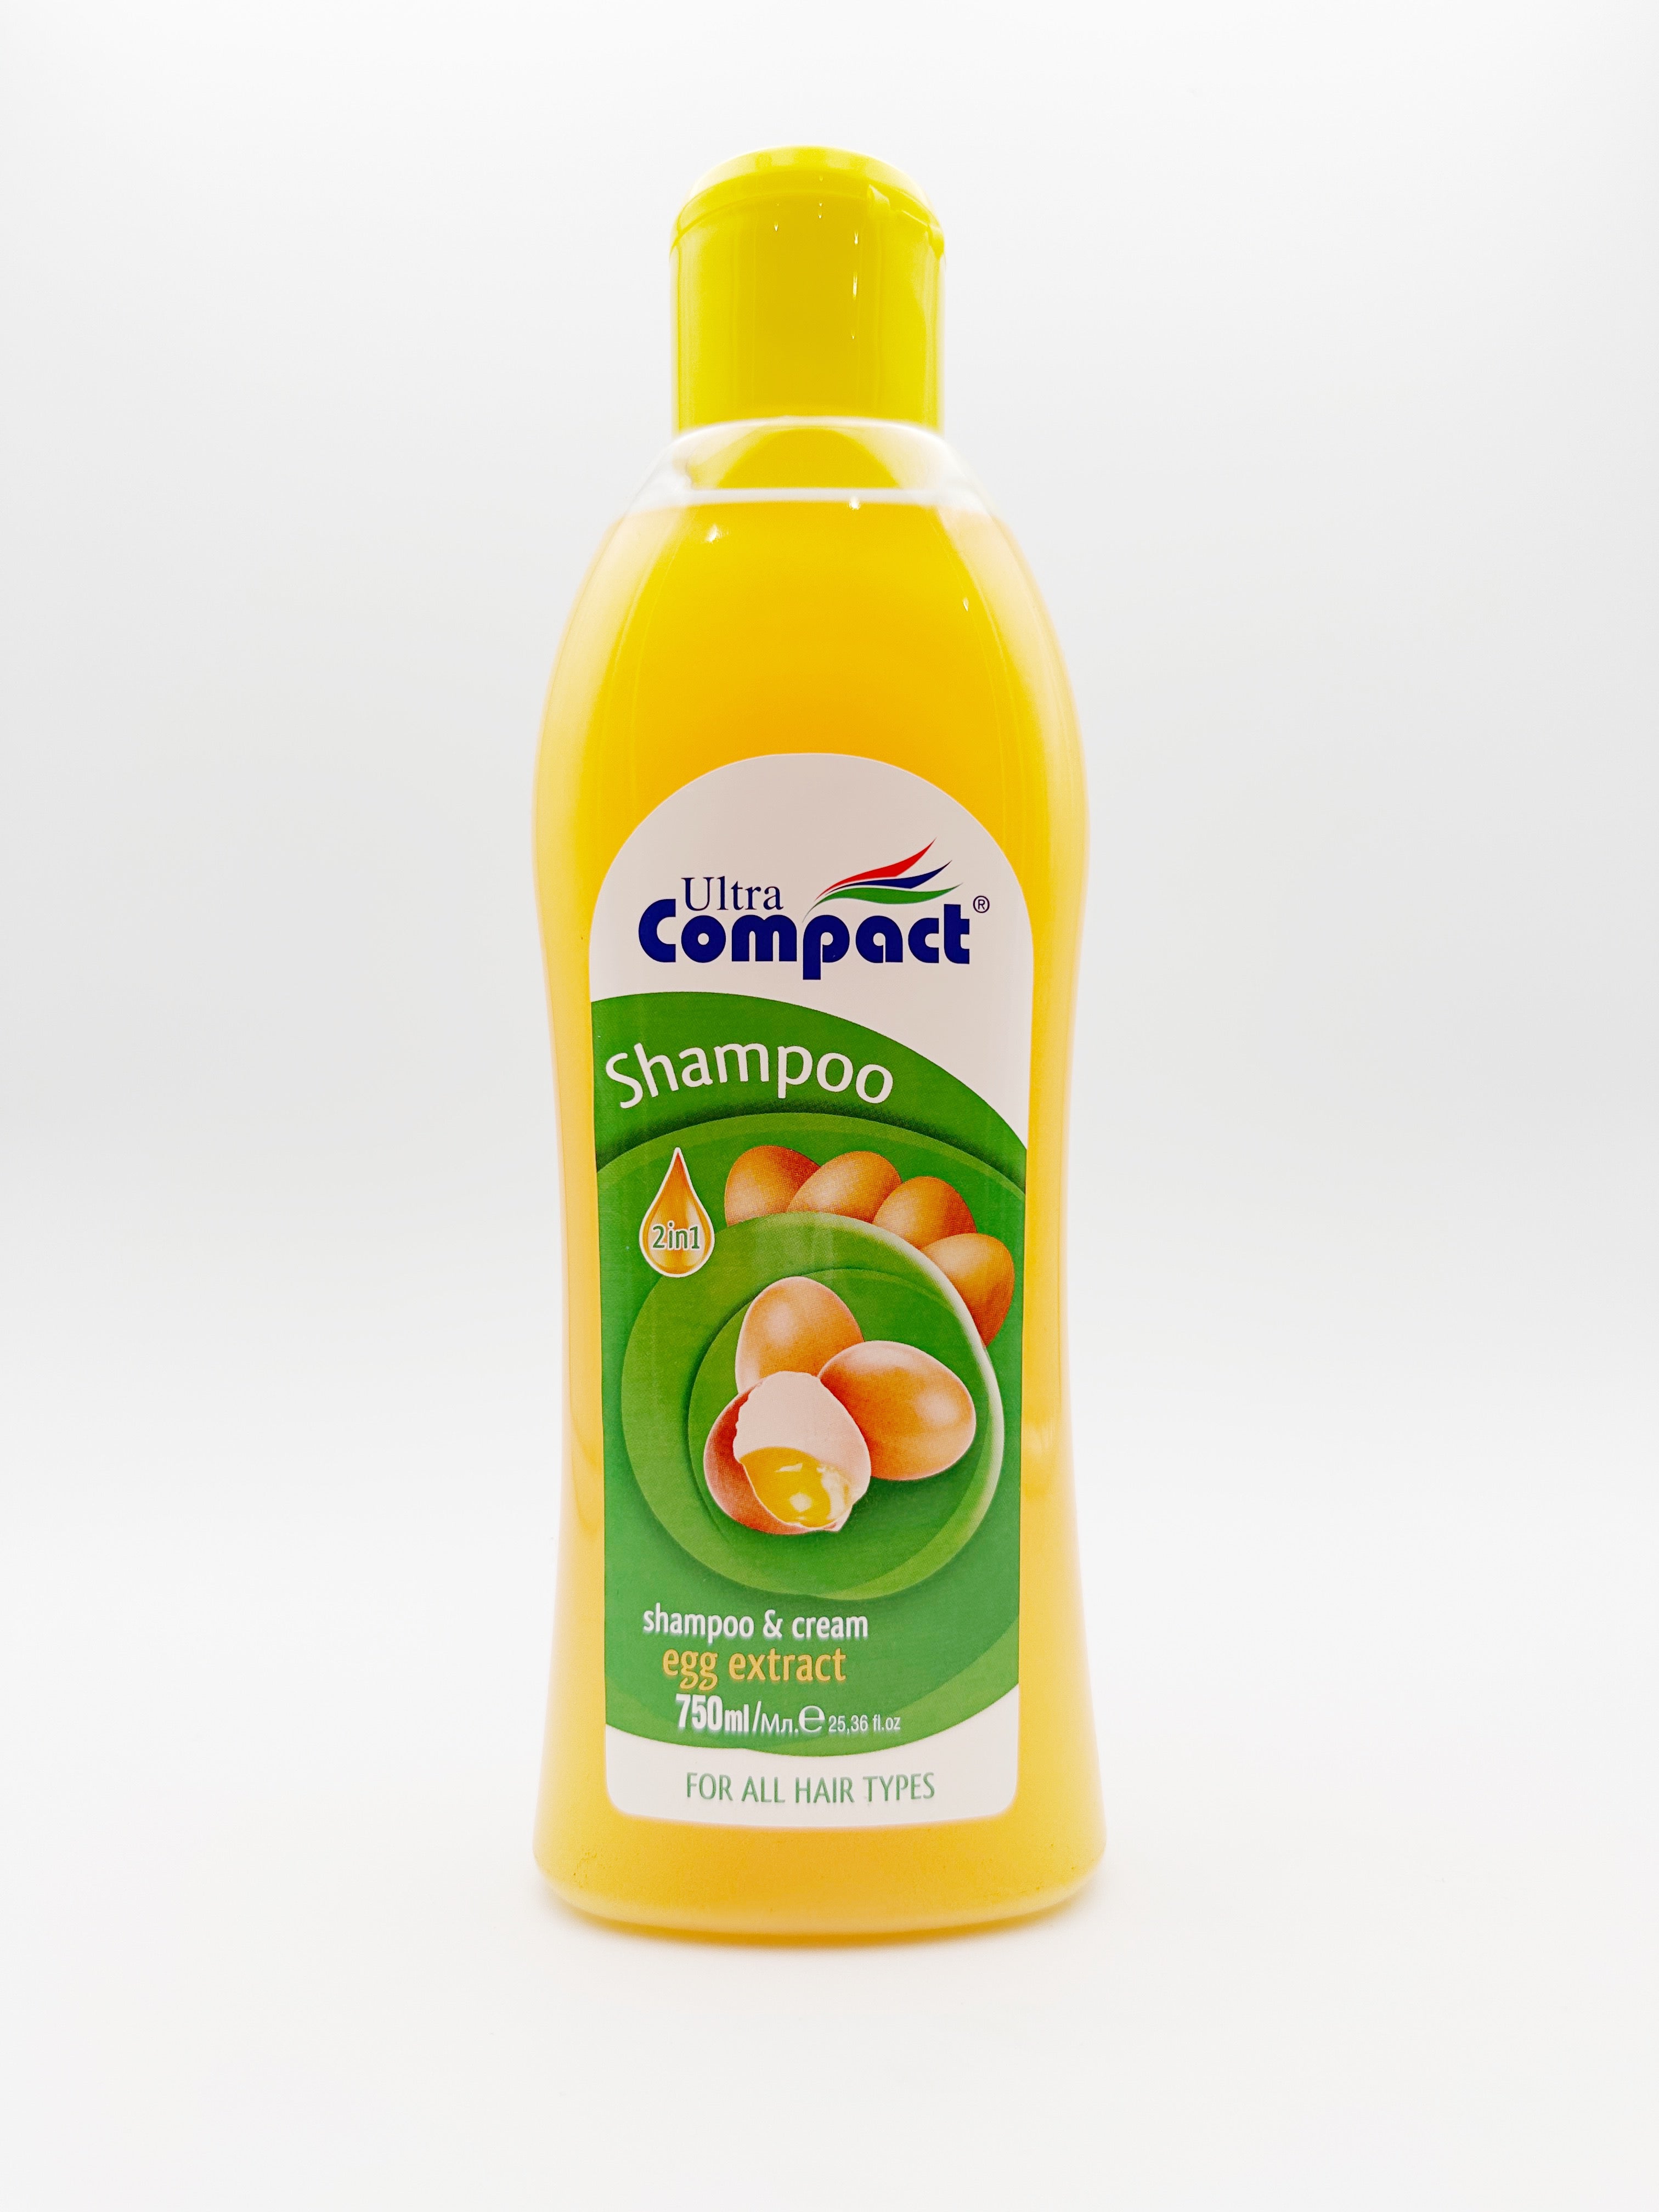 UltraCompact Shampoo 2in1 Ei 750ml